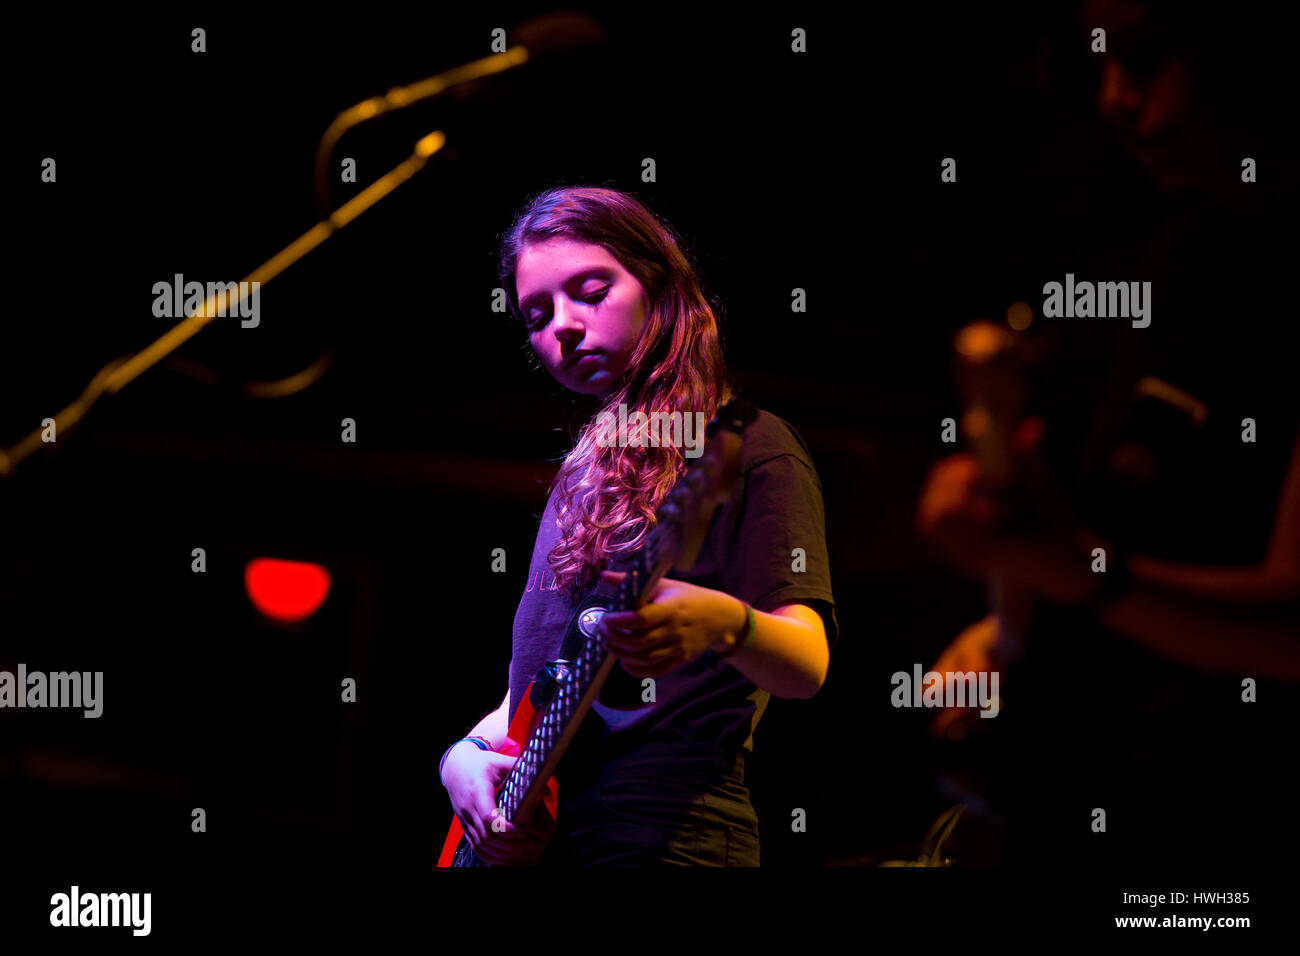 BARCELONA - Feb 8: lloran (banda) realiza en el Apolo el lugar el 8 de febrero de 2015 en Barcelona, España. Foto de stock